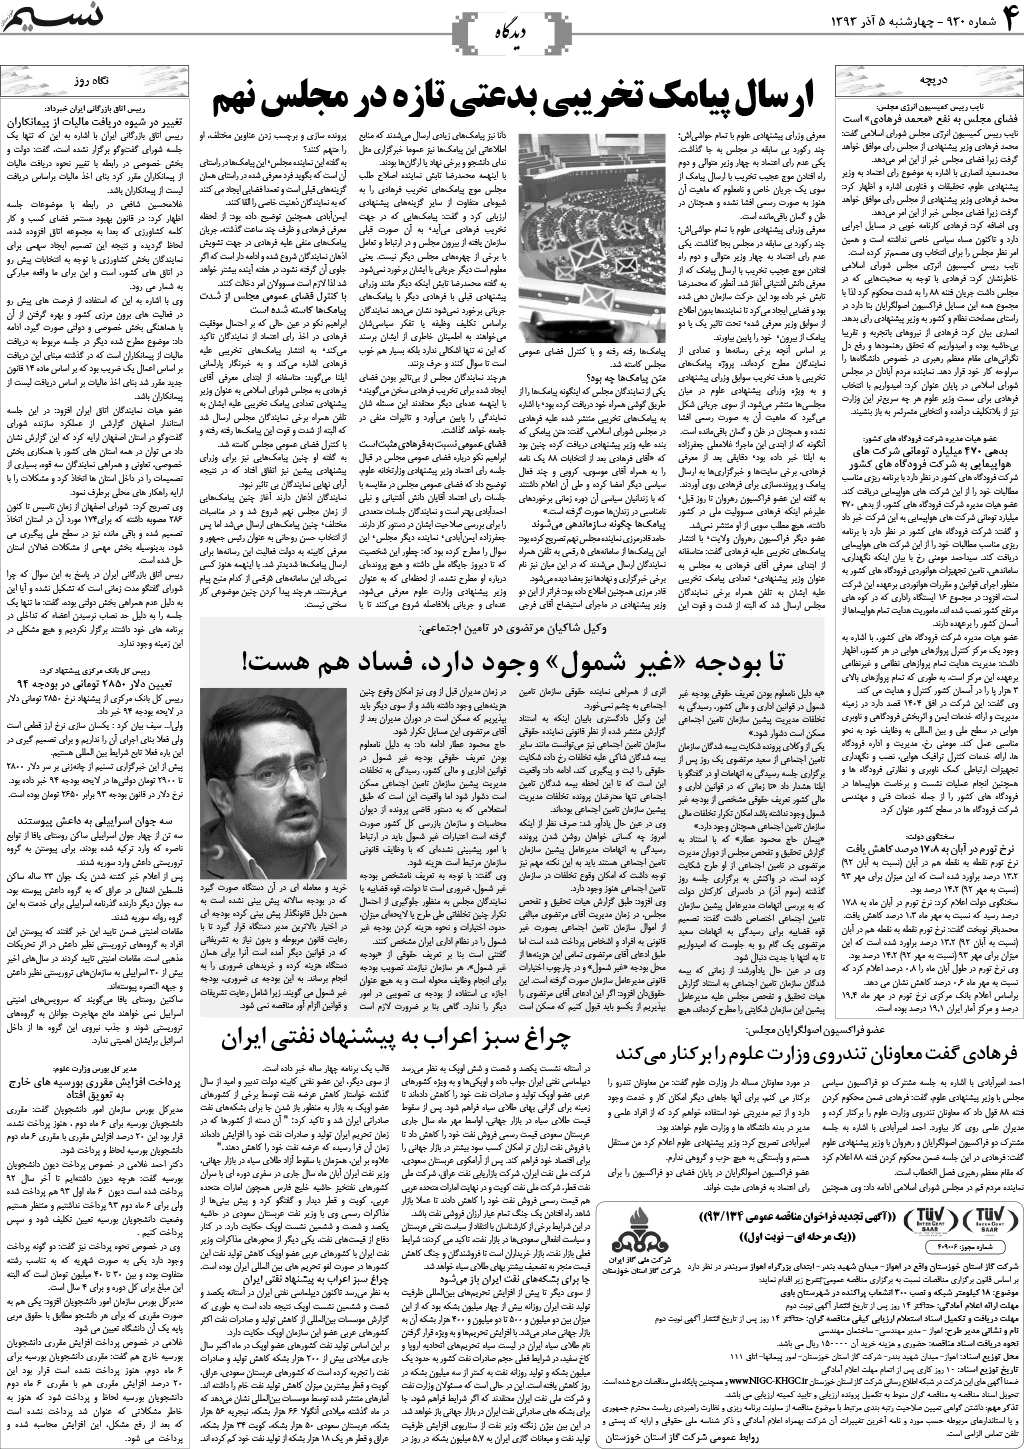 صفحه دیدگاه روزنامه نسیم شماره 930